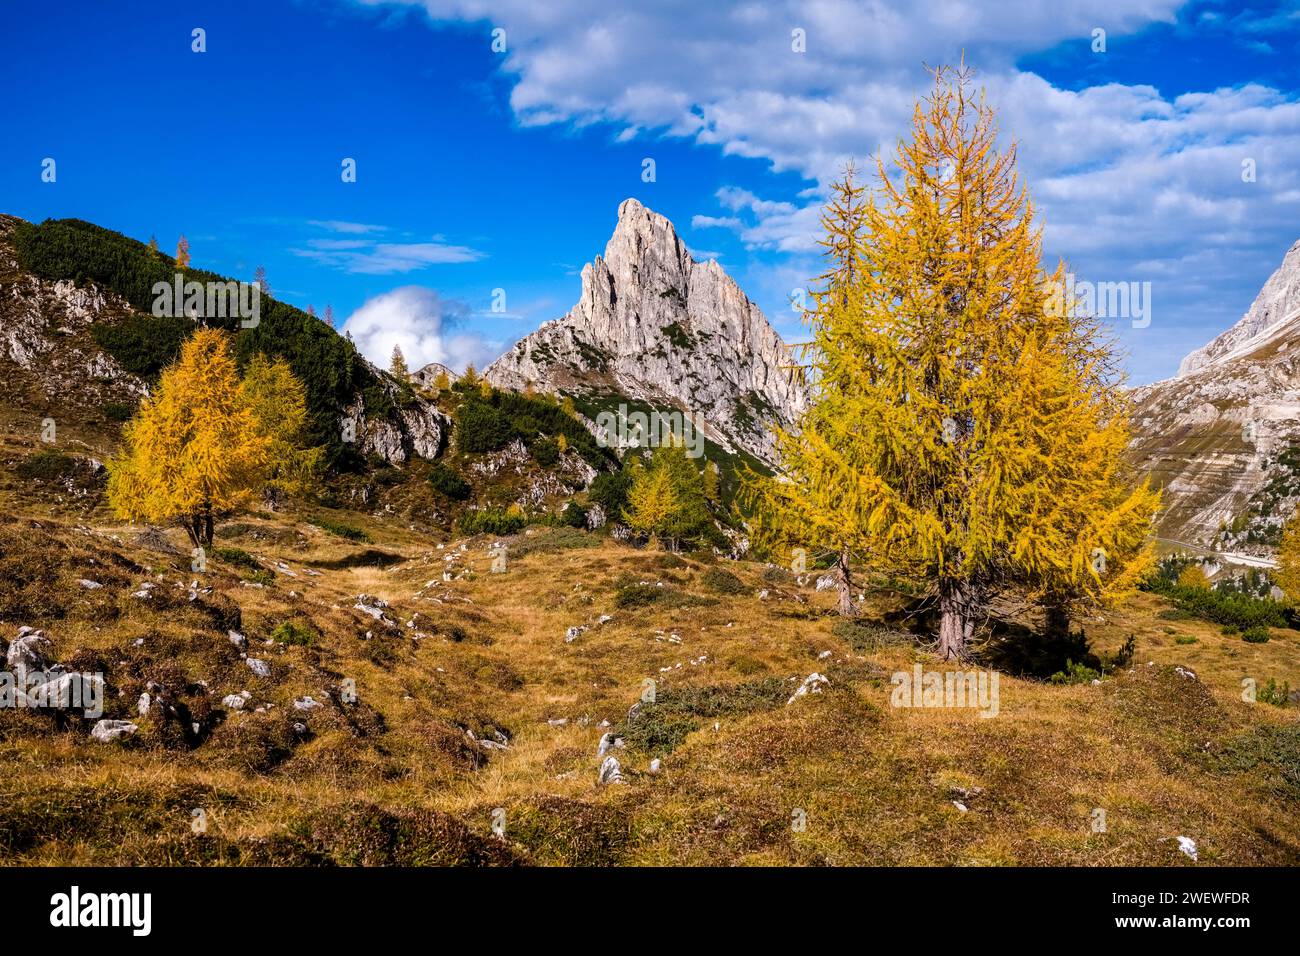 Bunte Lärchen an den Hängen rund um den Falzaregopass im Herbst, die Felswände und der Gipfel des Hexensteins in der Ferne. Stockfoto